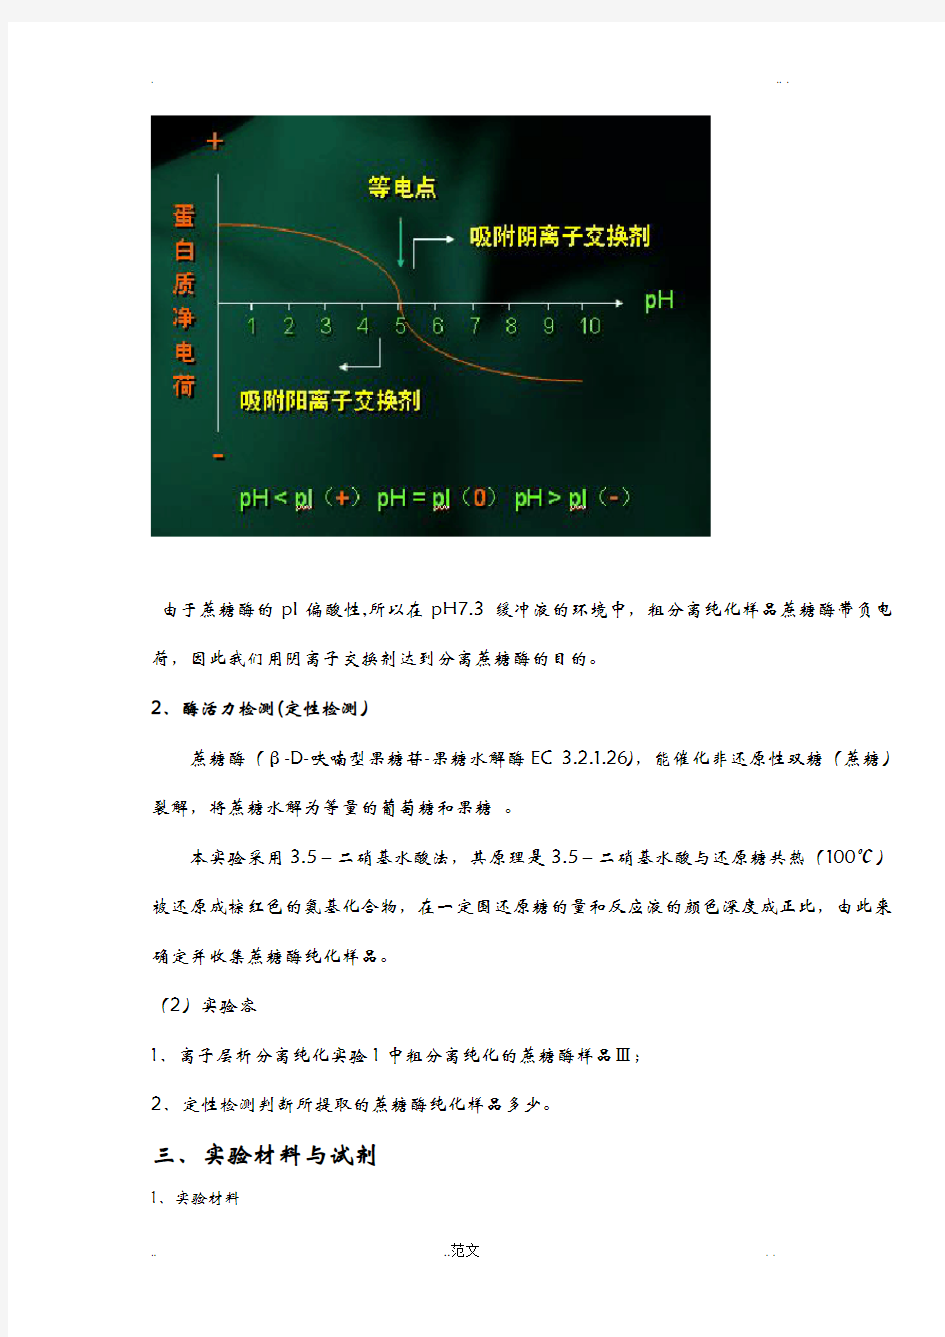 浙江大学生物化学丙实验报告